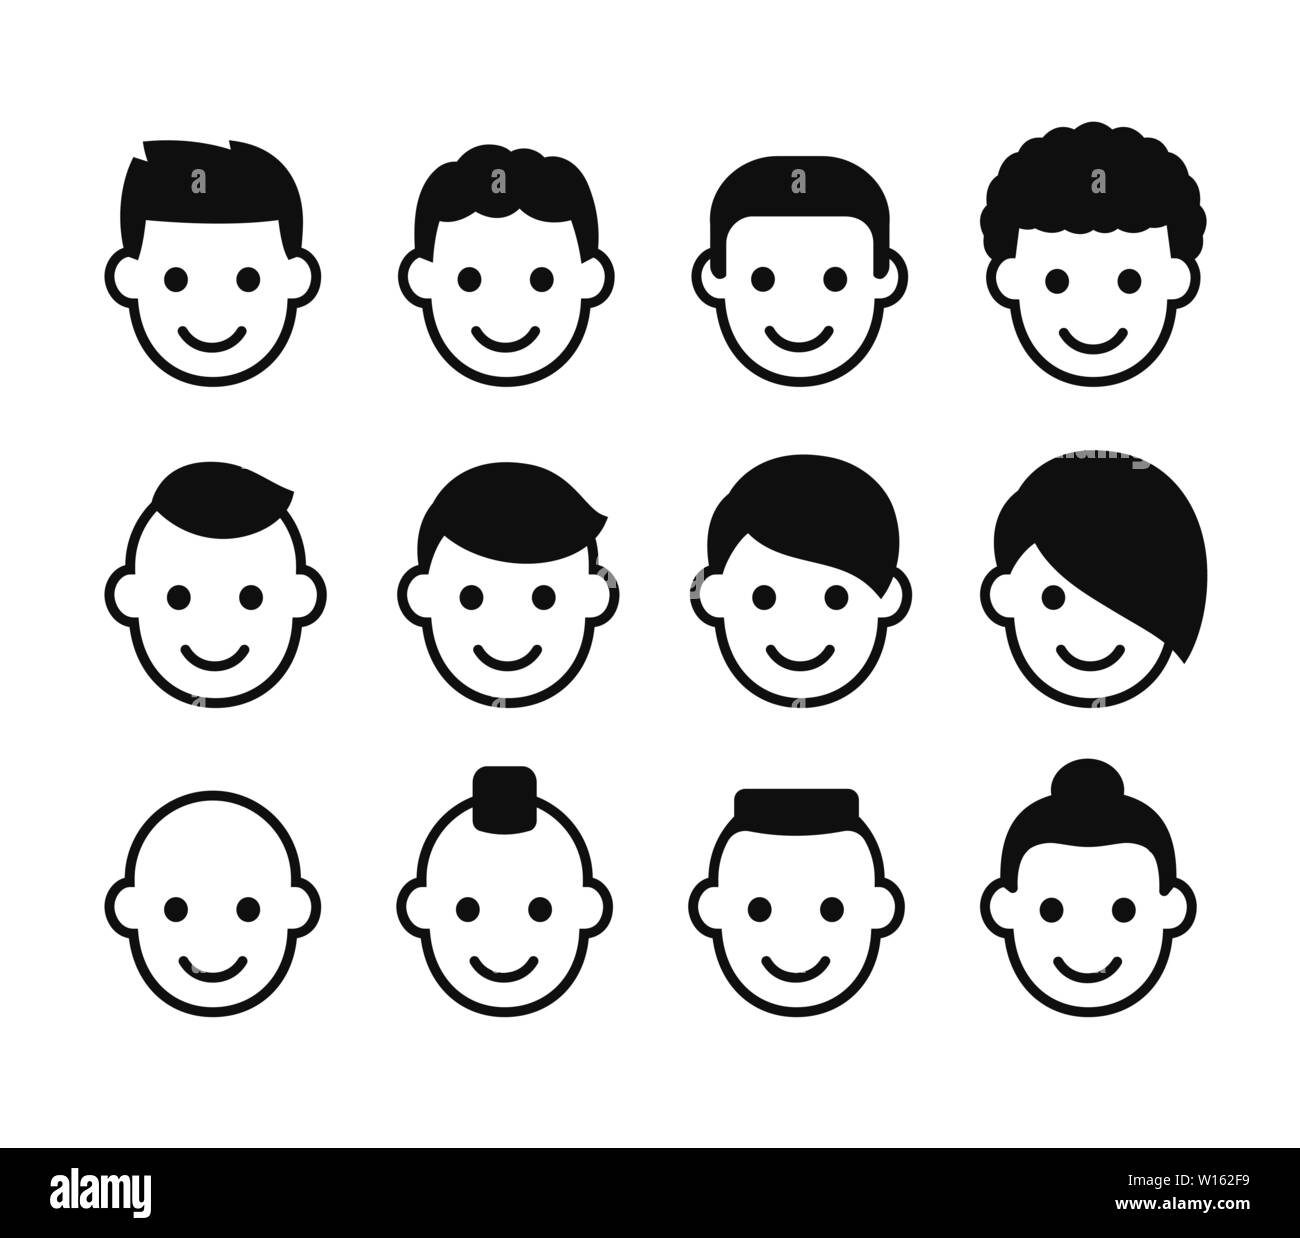 Männliche Haarschnitte Icon Set. Einfache Mann Gesicht Symbole mit unterschiedlichen Frisuren. Stilisierter Kopf Avatare Vector Illustration Collection. Stock Vektor